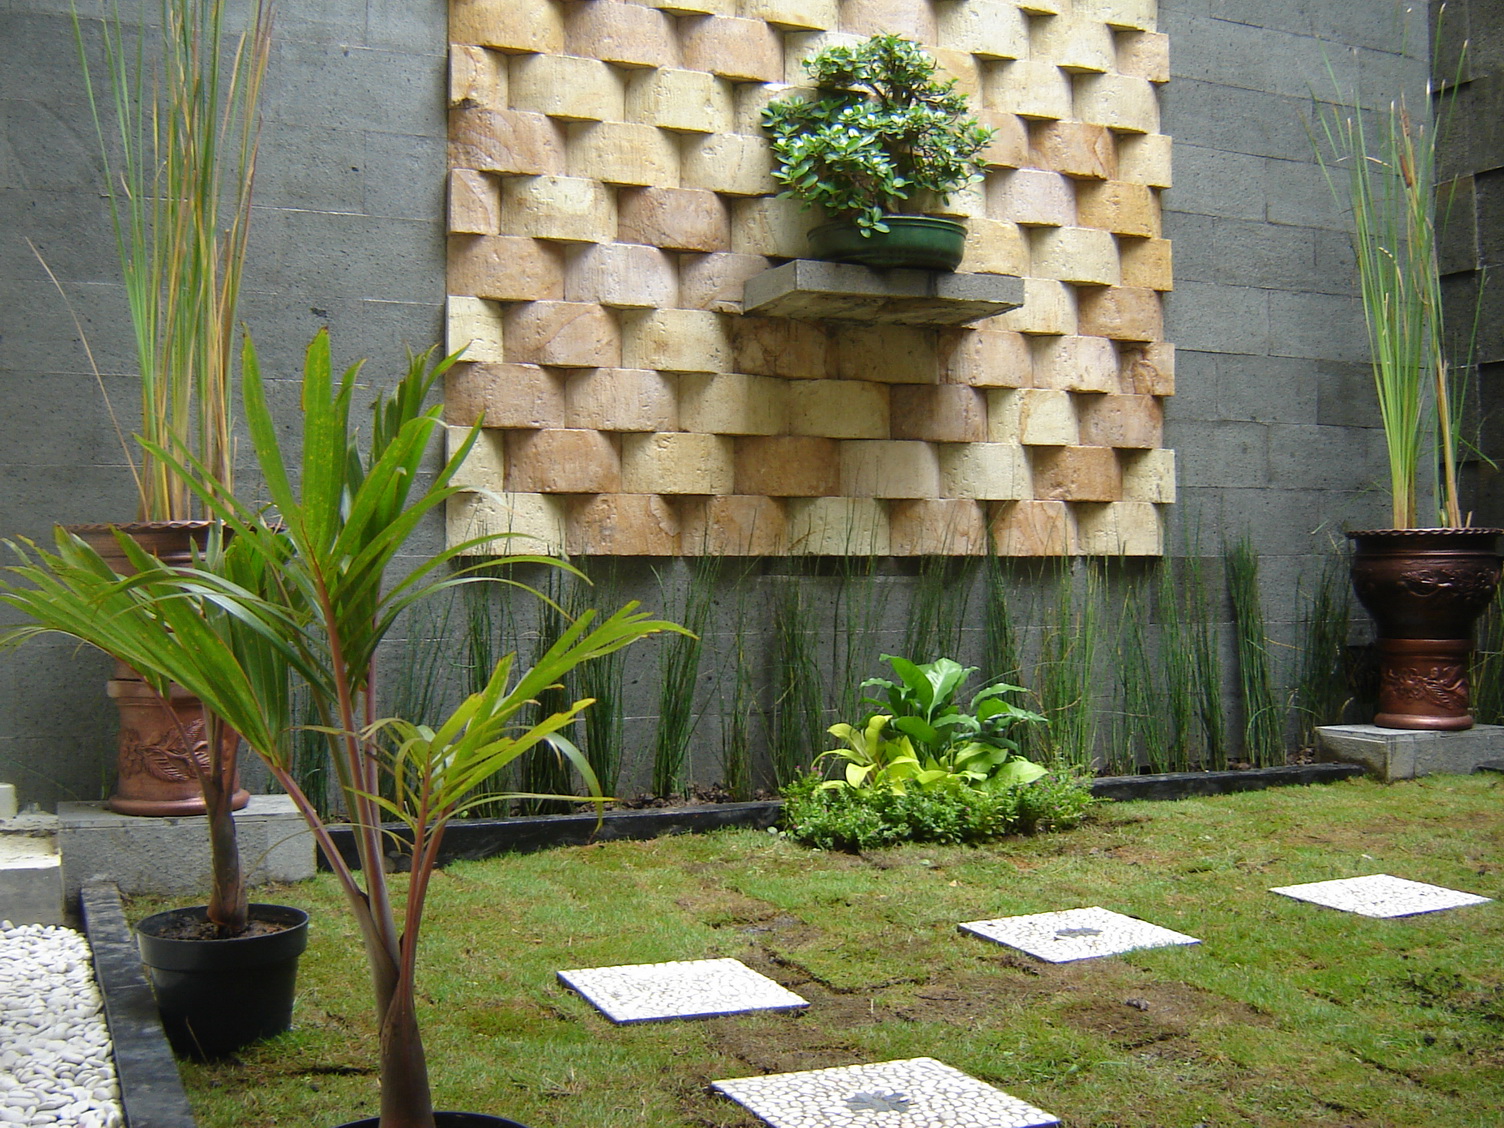 Desain Rumah 2 Lantai Dengan Batu Alam / Desain Taman Batu Alam | Kumpulan Desain Rumah / Desain rumah 2 lantai tanpa pagar.